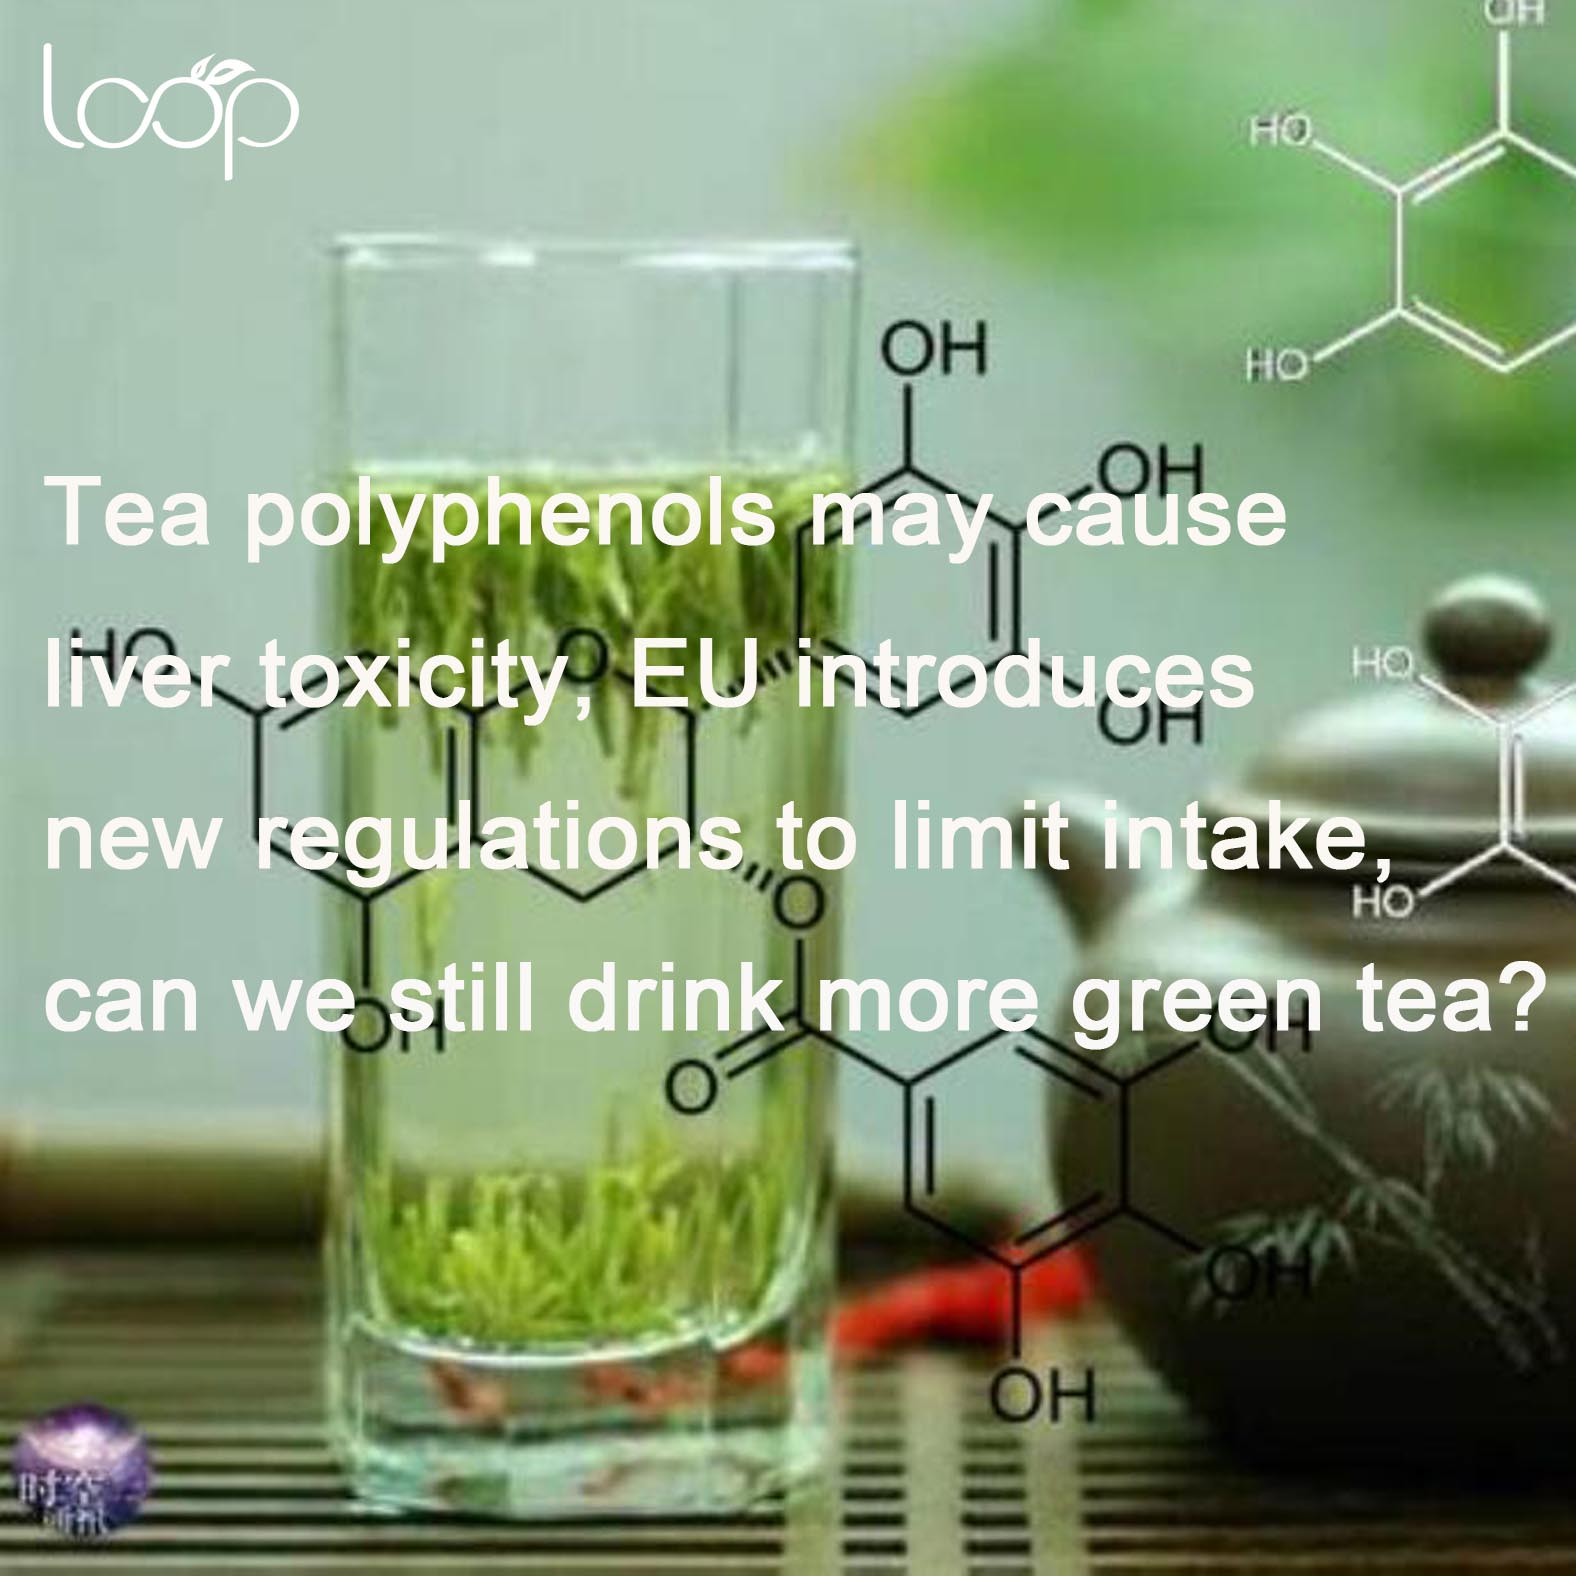 Polifenoli čaja mogu uzrokovati toksičnost jetre, EU uvodi nove propise za ograničavanje unosa, možemo li još piti više zelenog čaja?